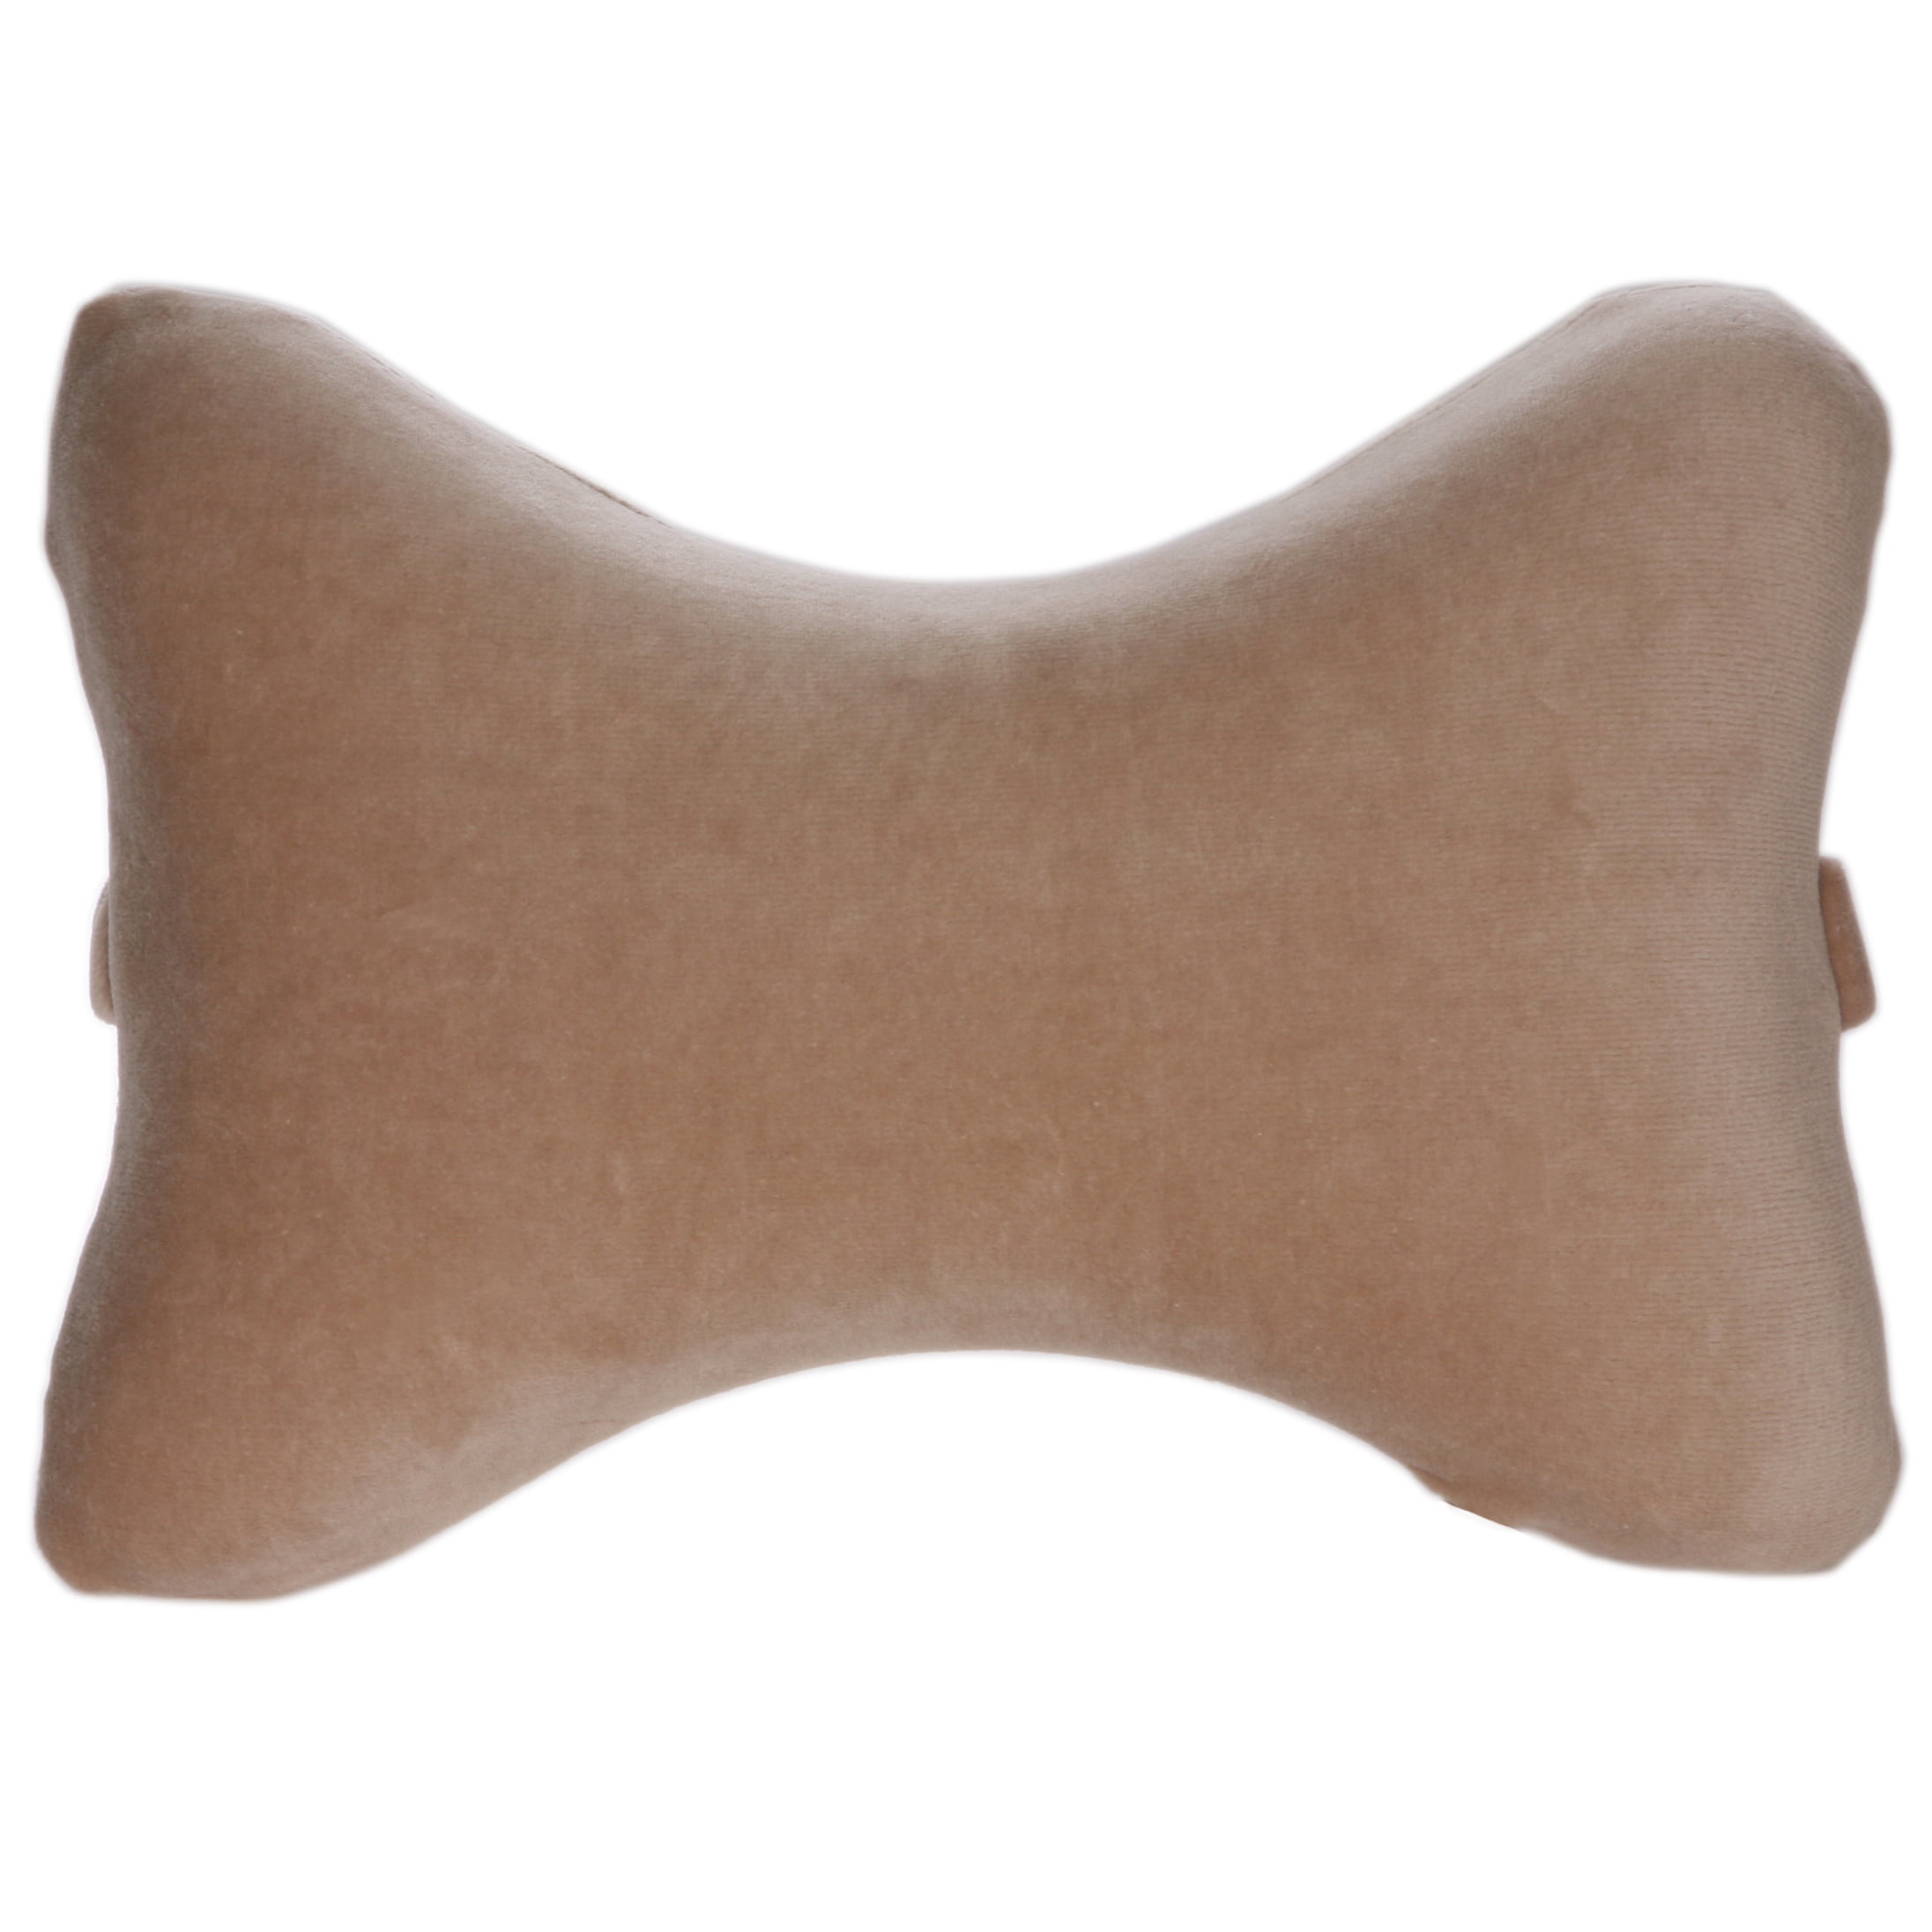 neck bone pillow walmart